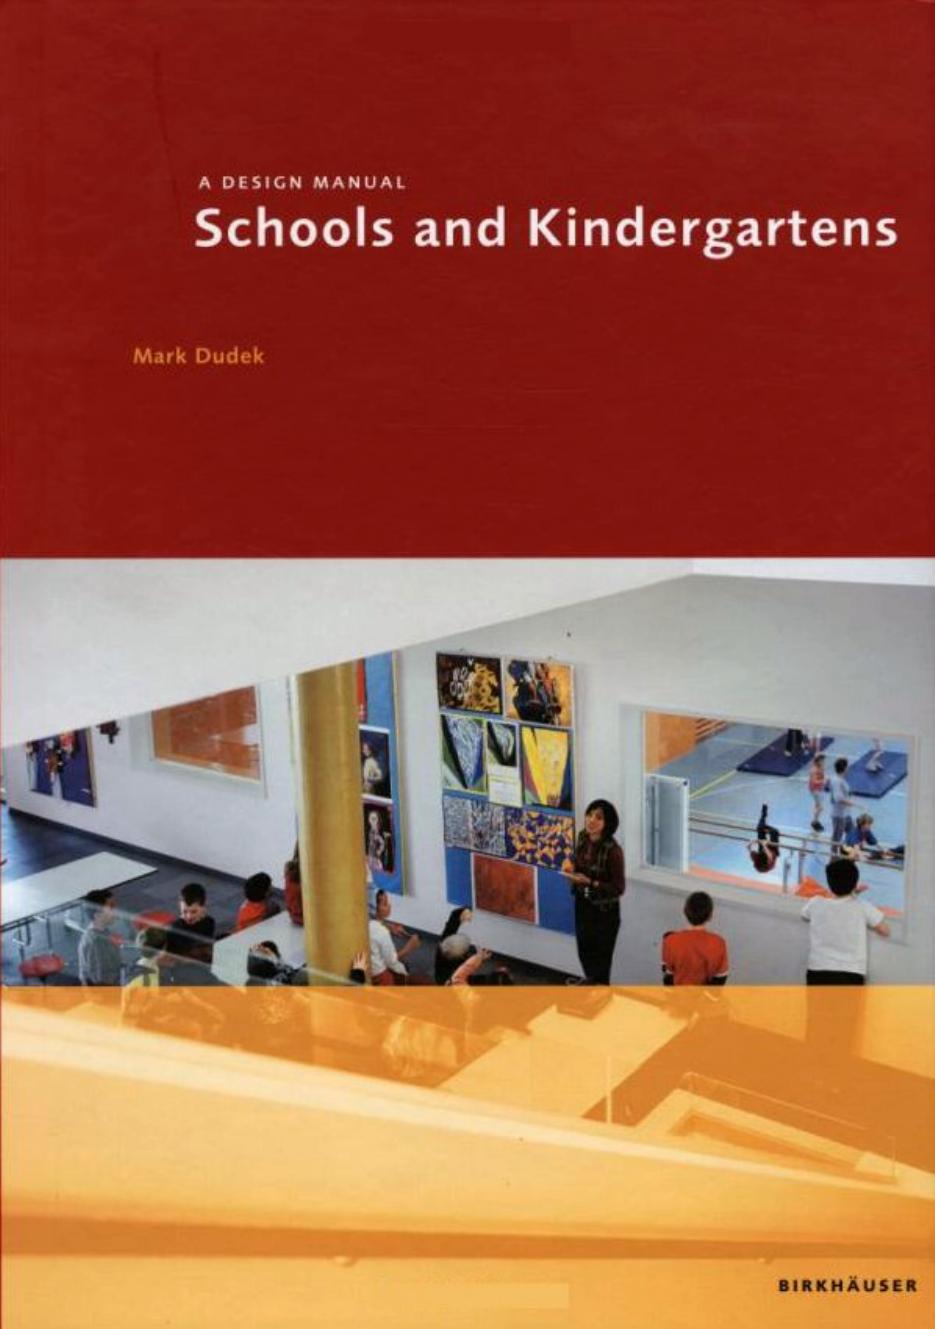 Schools and Kindergardens